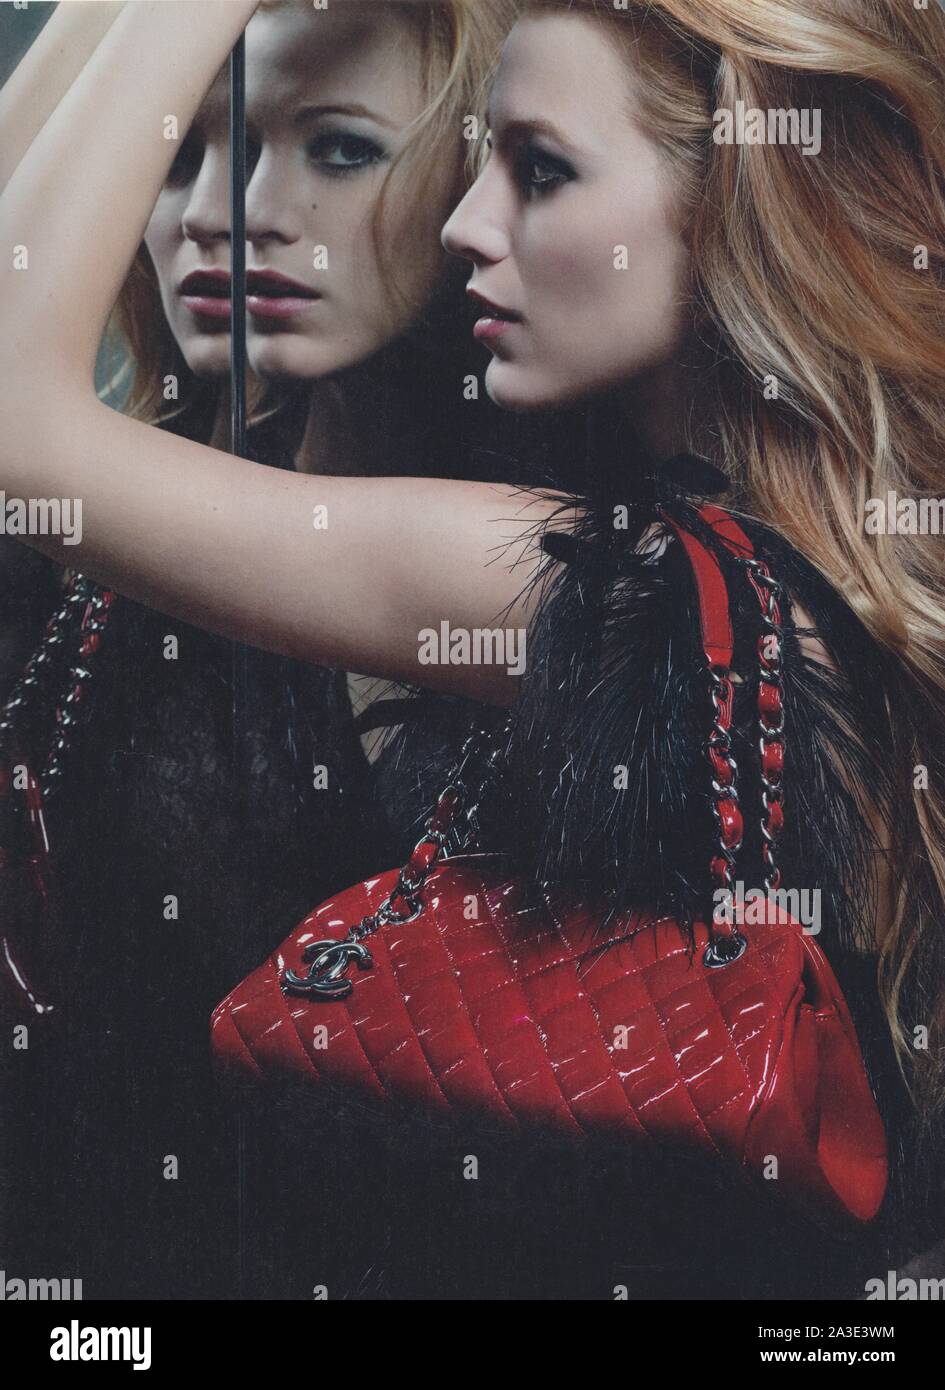 Poster pubblicitari CHANEL Mademoiselle sacchetti con Blake Lively nella rivista cartacea dal 2011, pubblicità creative CHANEL annuncio da 2010s Foto Stock